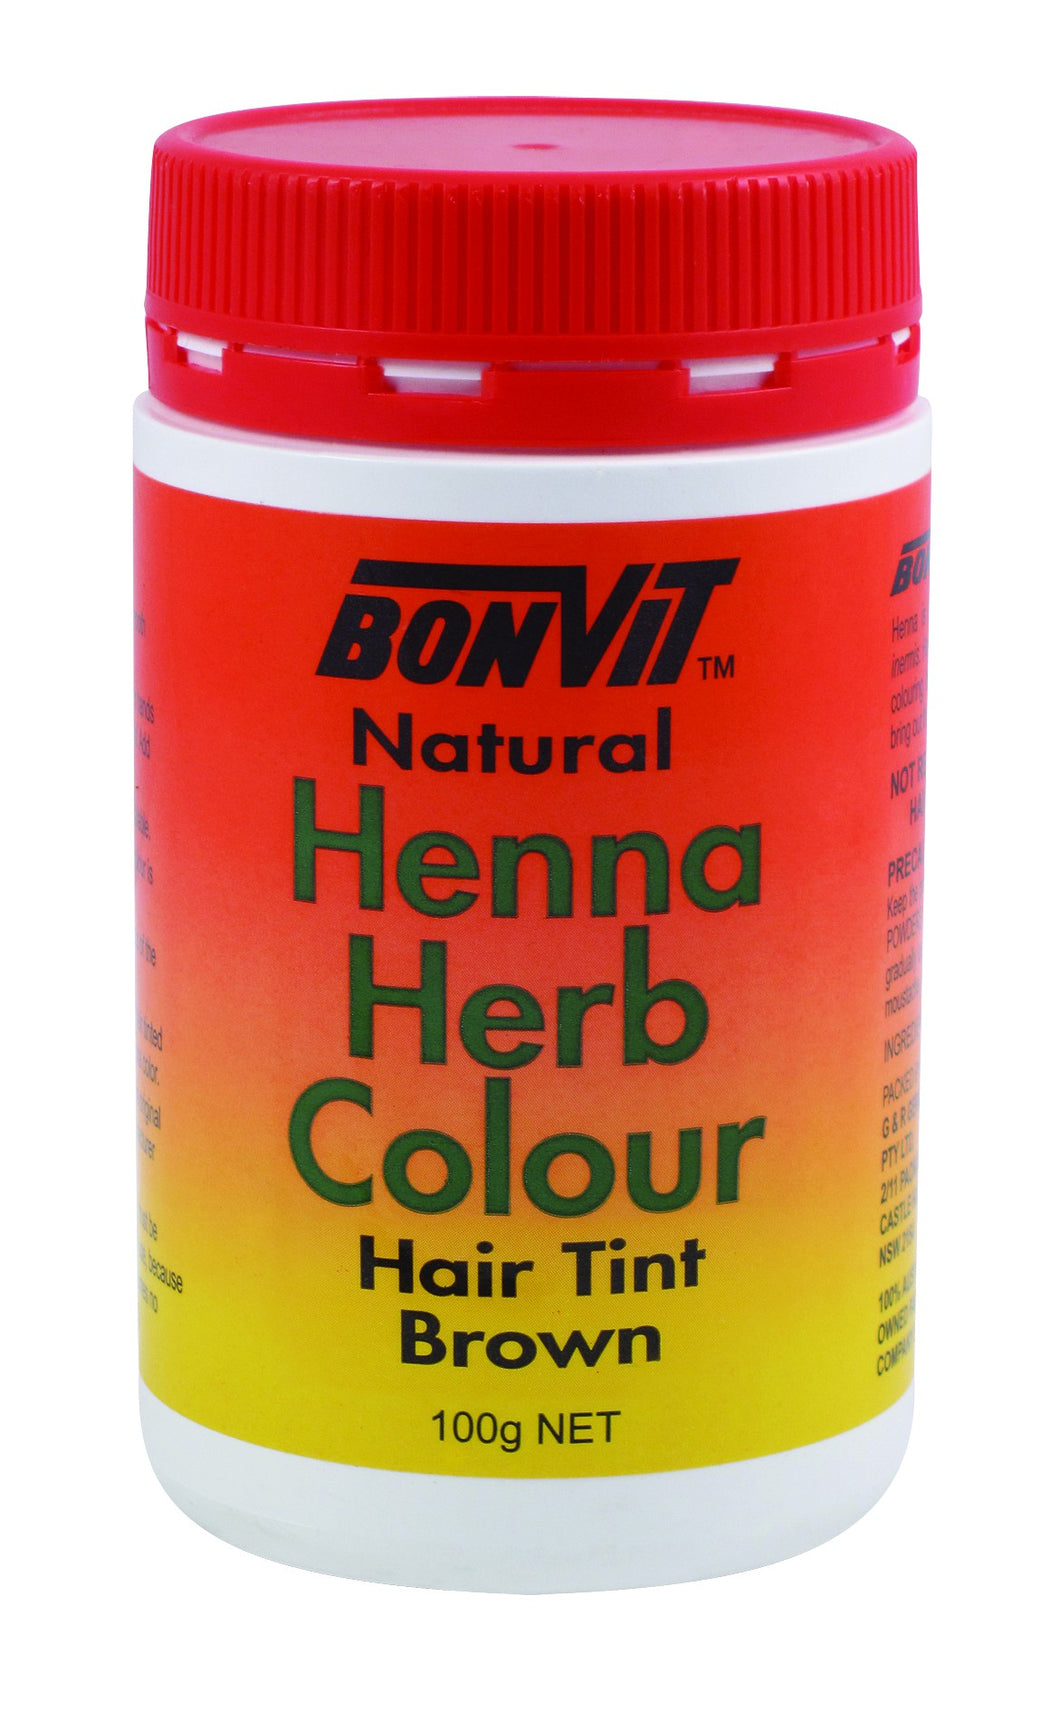 BonVit, Natural Henna Herb Colour, Hair Tint, Brown, 100 g